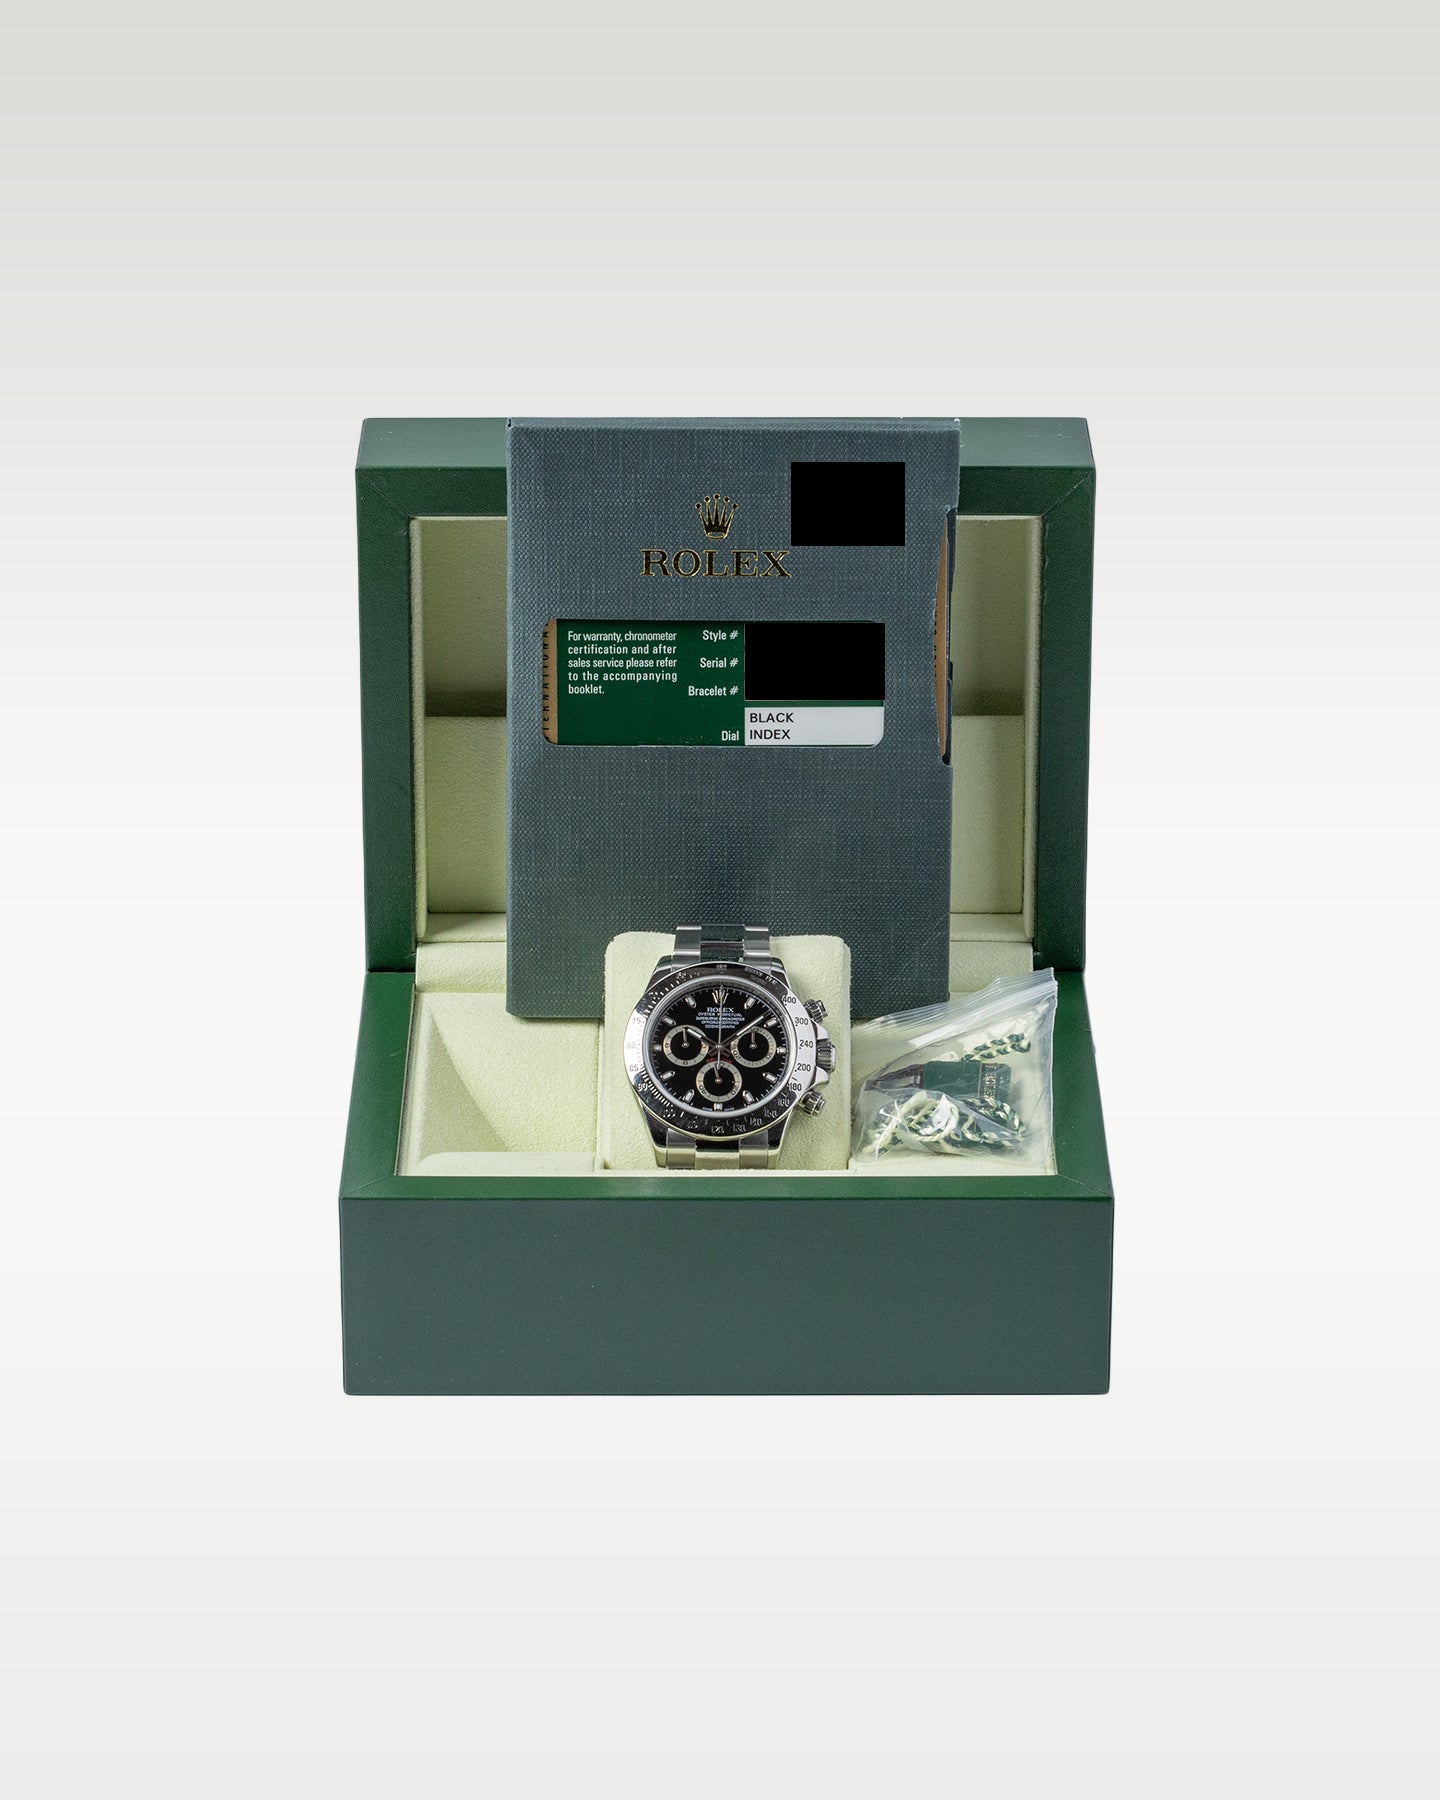 Vintage Rolex Watches-Rolex Daytona 116520